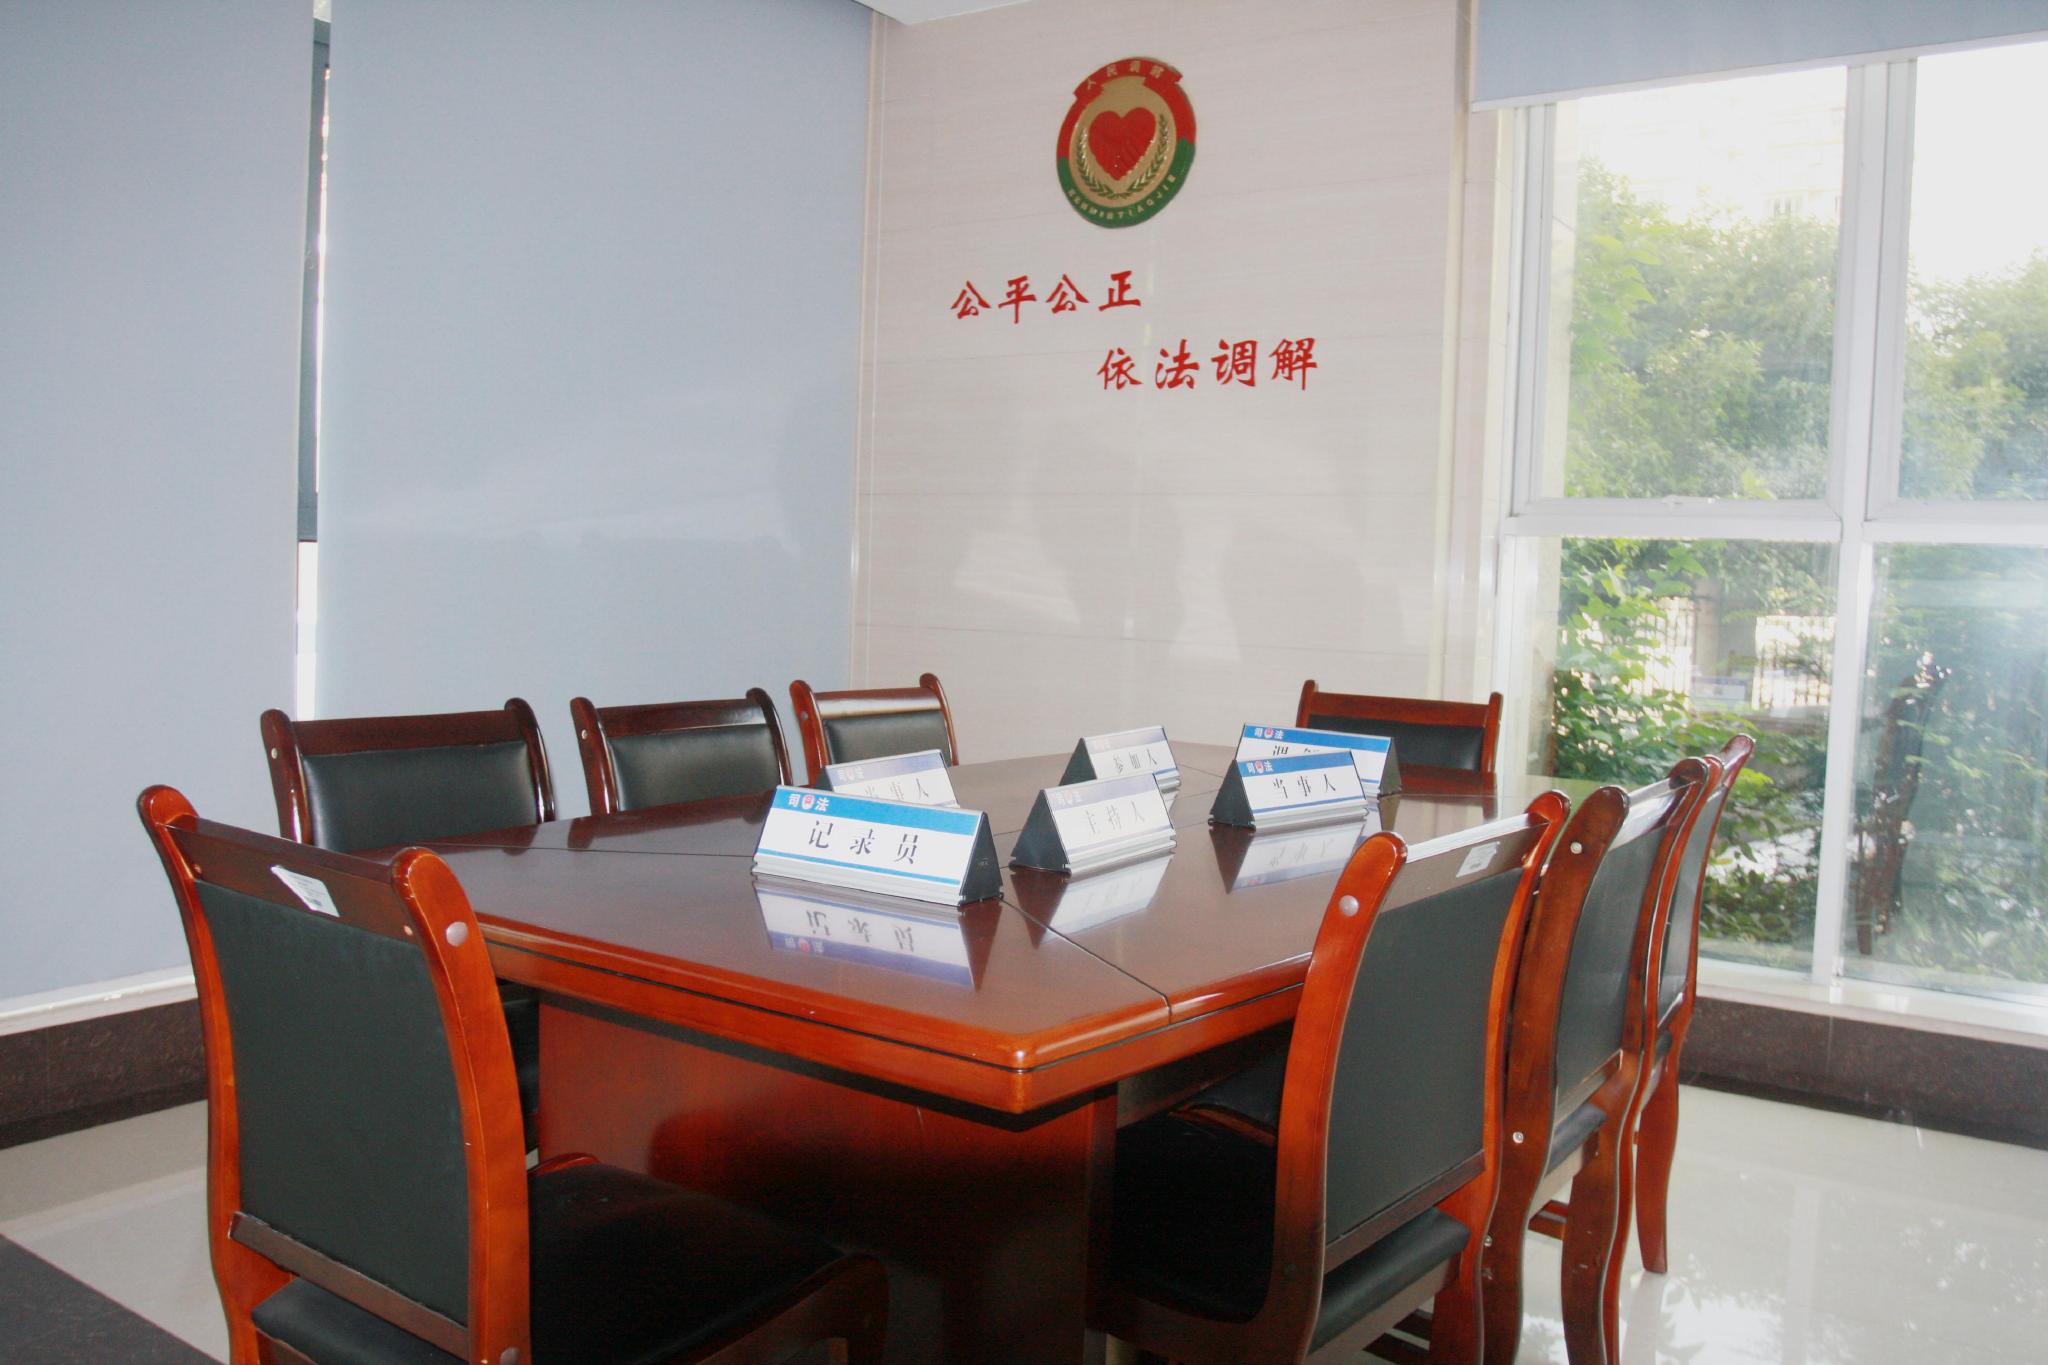 律师调解工作室进驻余杭区公共法律服务中心